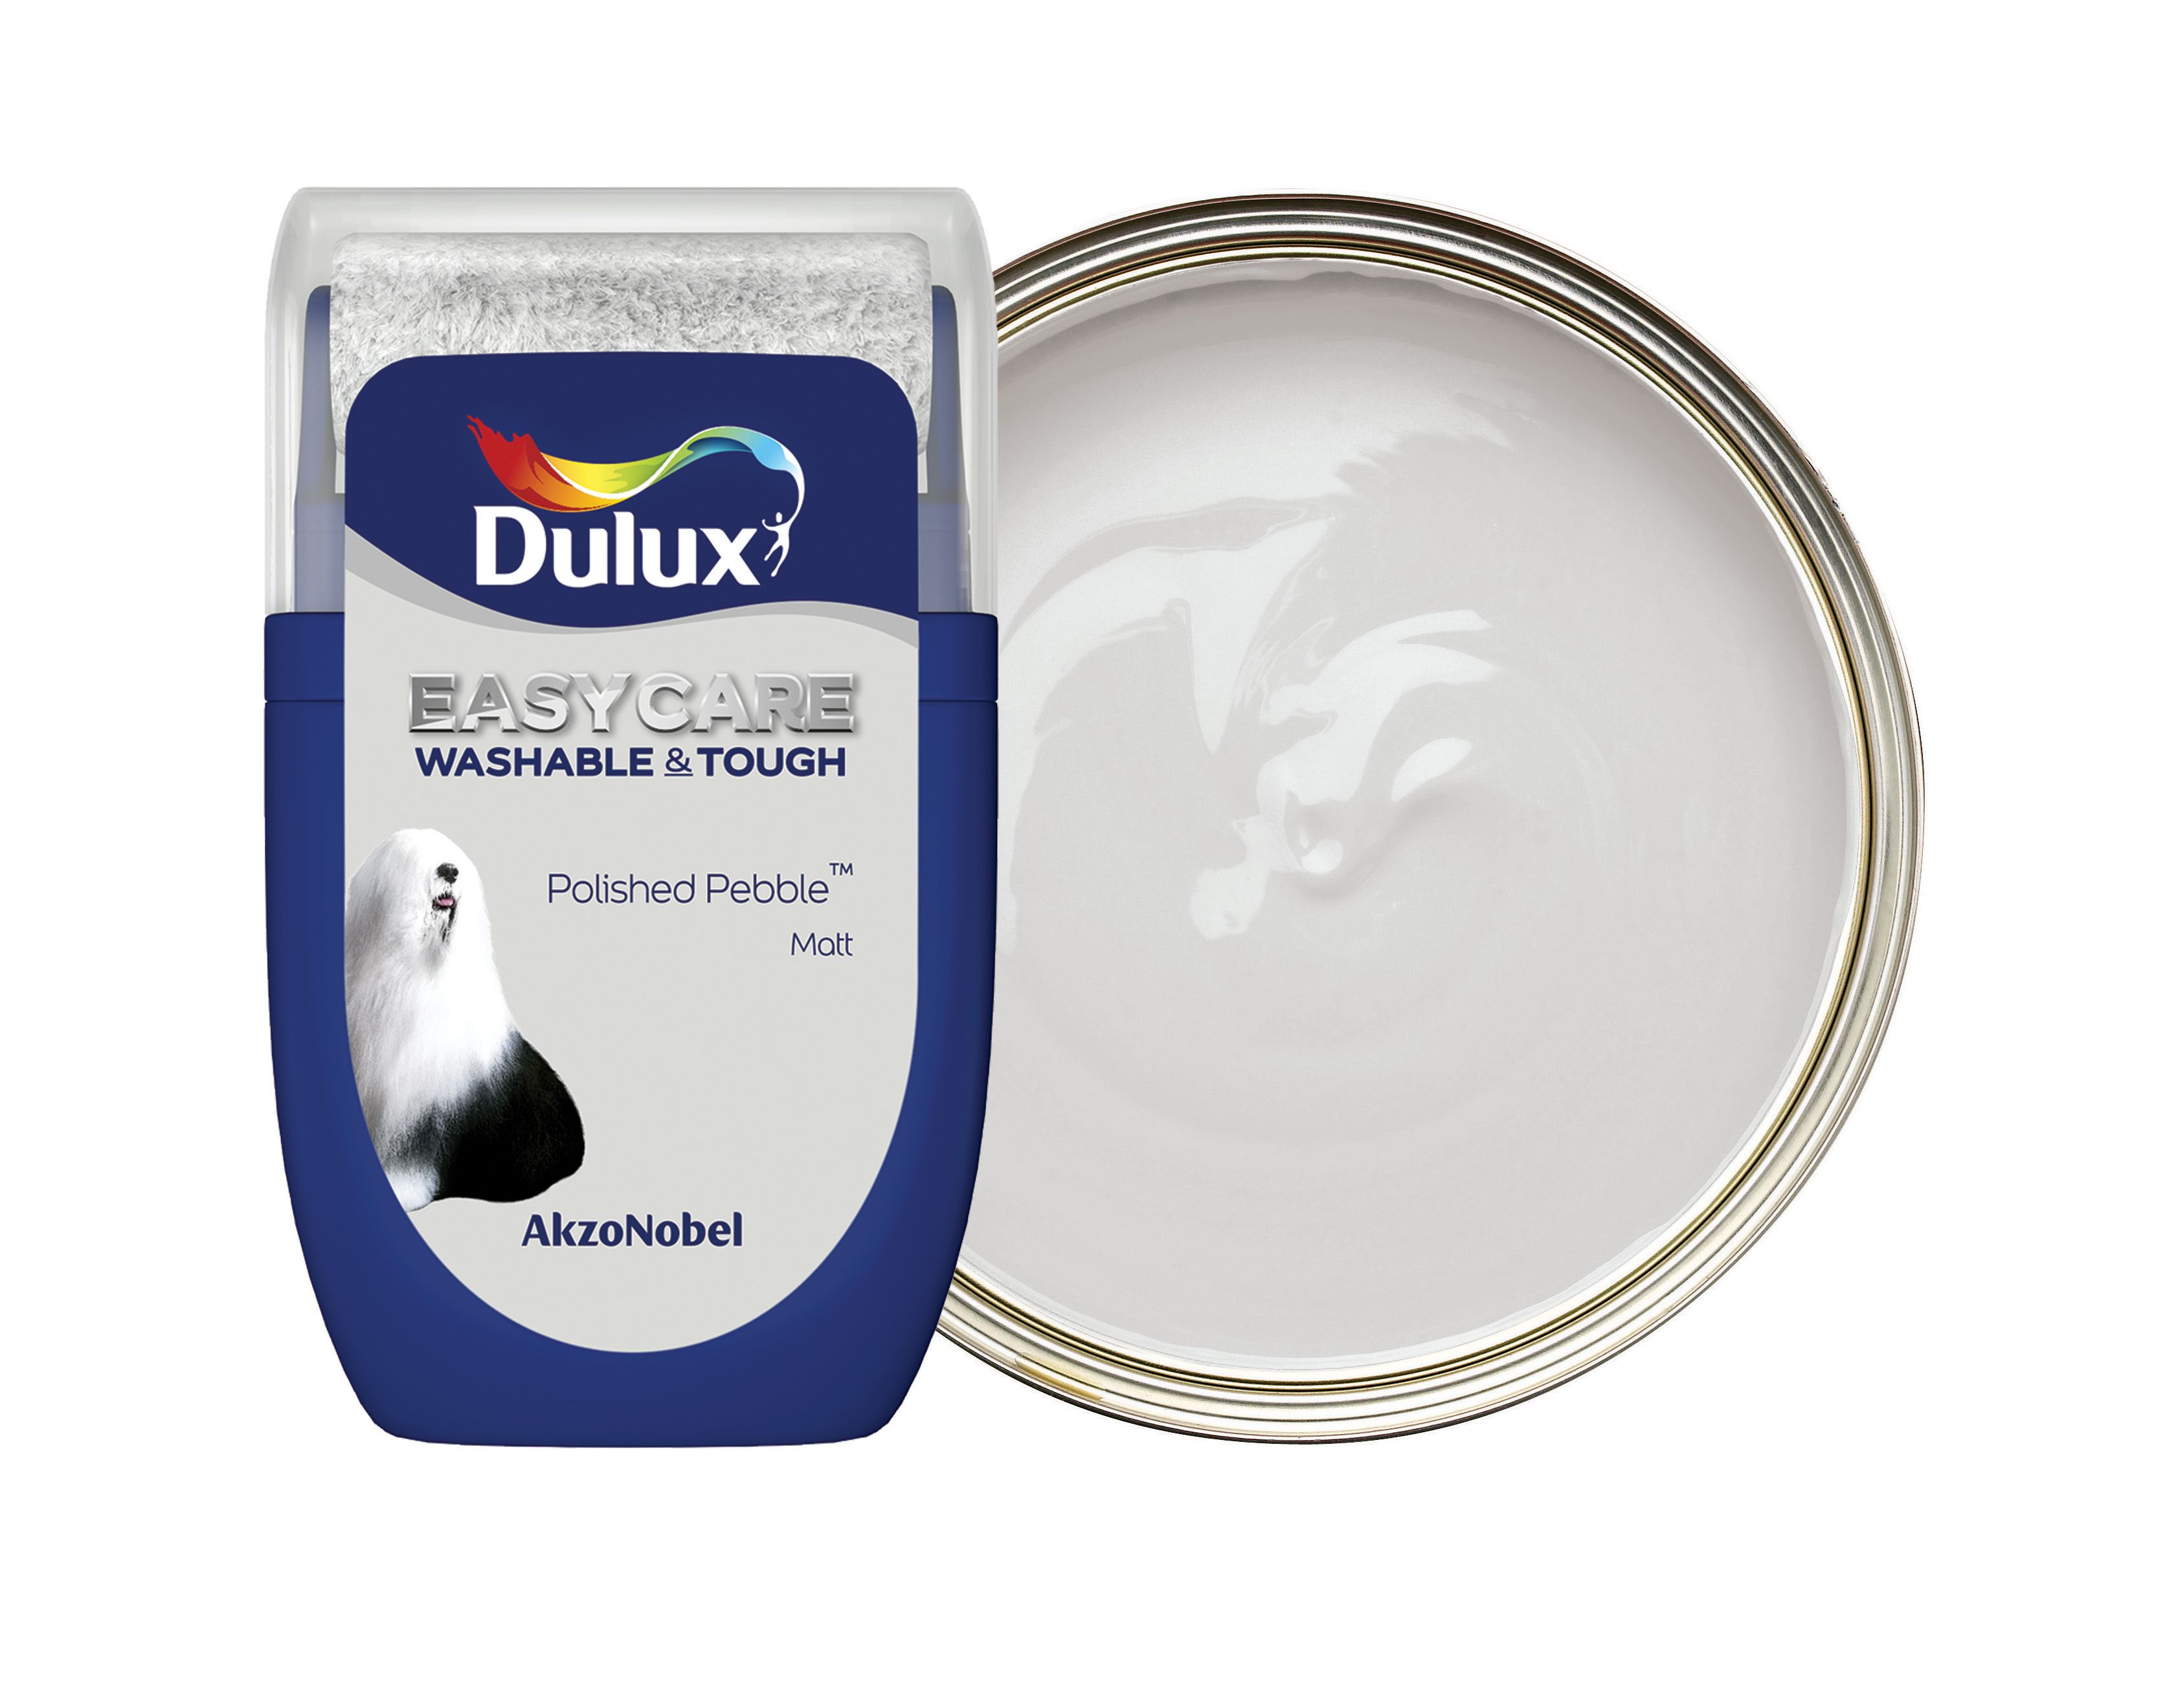 Dulux Easycare Washable & Tough Paint Tester Pot - Polished Pebble - 30ml